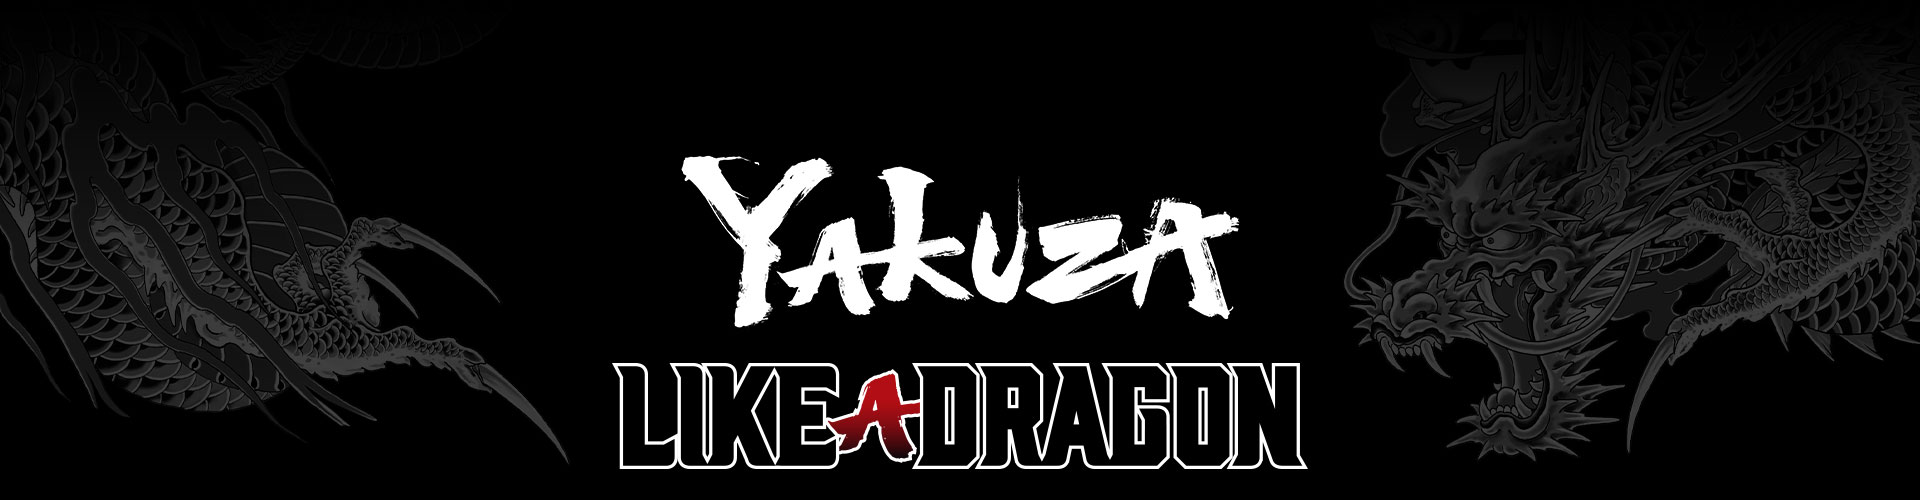 Biçimlendirilmiş bir gri ejderha dövmesi arka planı ile Yakuza Like a Dragon serisi logosu.